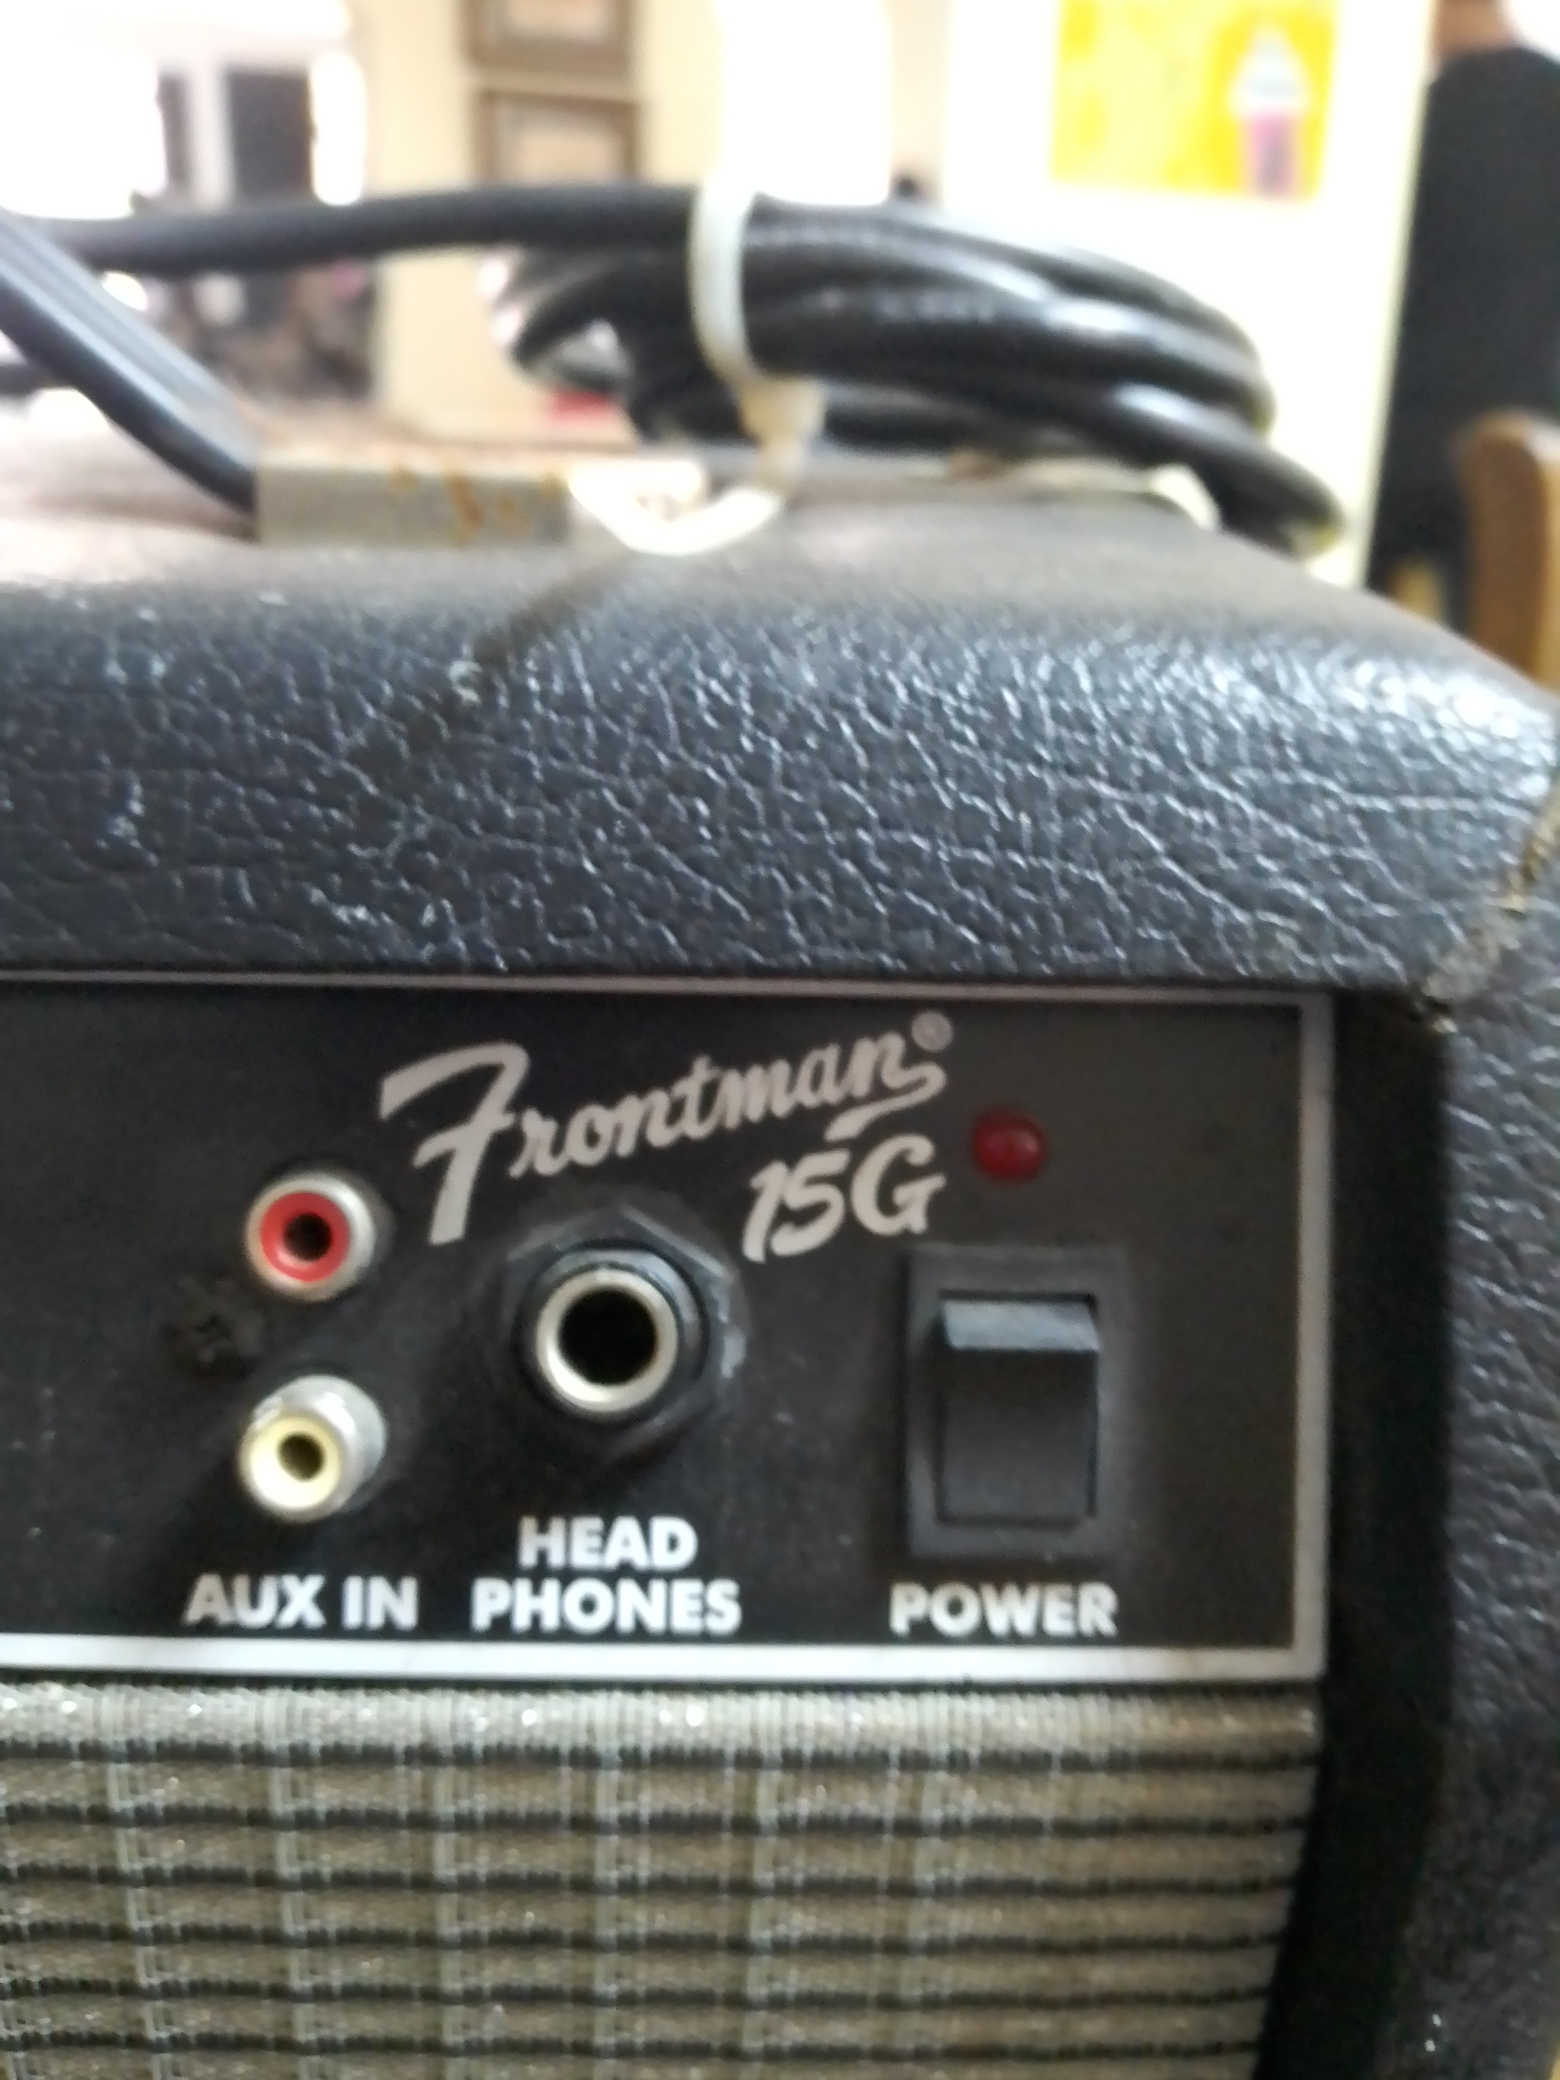 camaras y audio - Amplificador Fender frontman 15 g